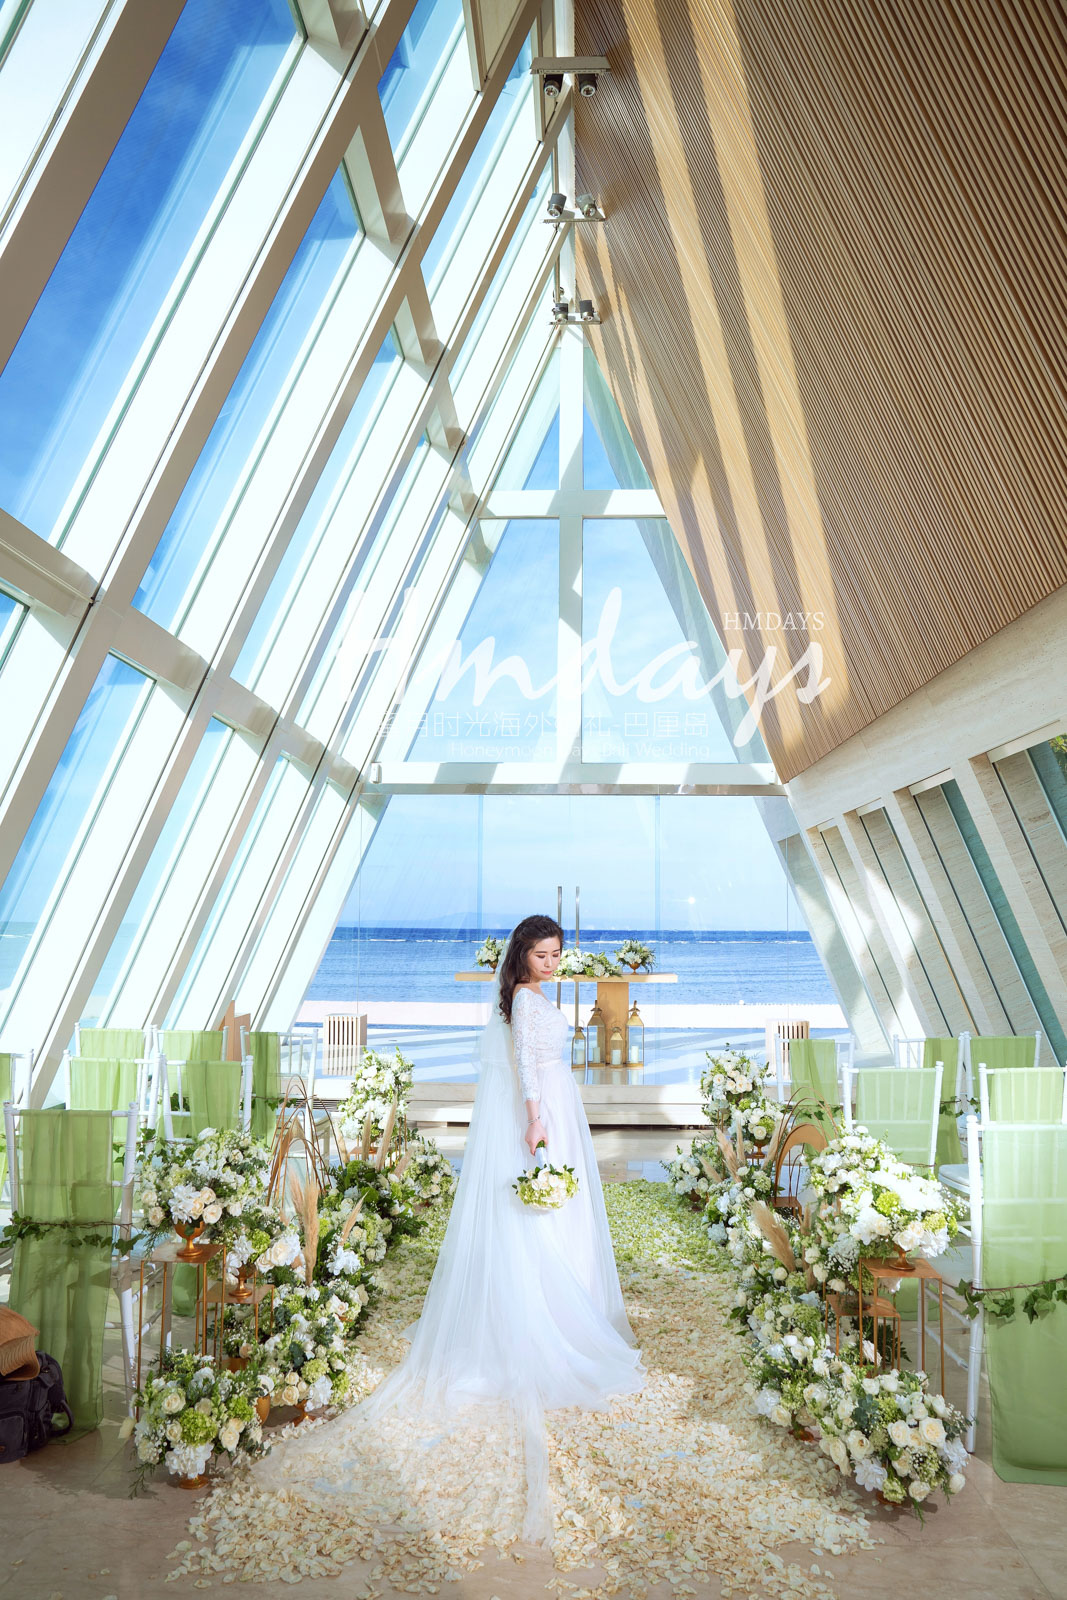 海外婚礼布置|巴厘岛婚礼定制布置|海外婚礼定制中高端布置案例|巴厘岛婚礼布置定制案例